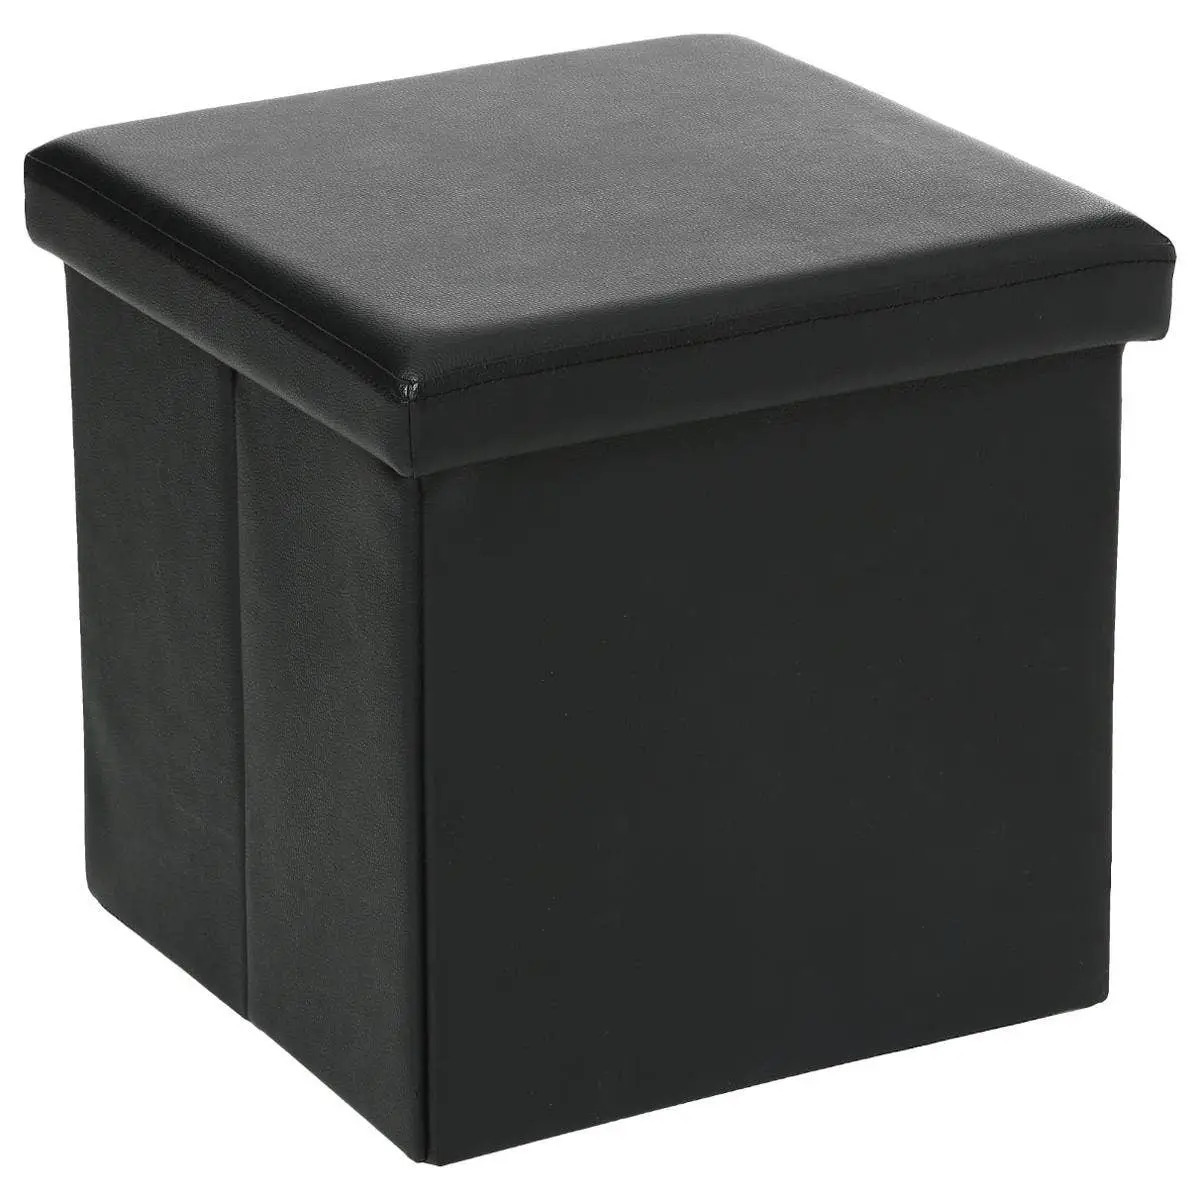 Atmosphera Poef-Hocker-voetenbankje opbergbox zwart pvc-mdf 38 x 38 cm